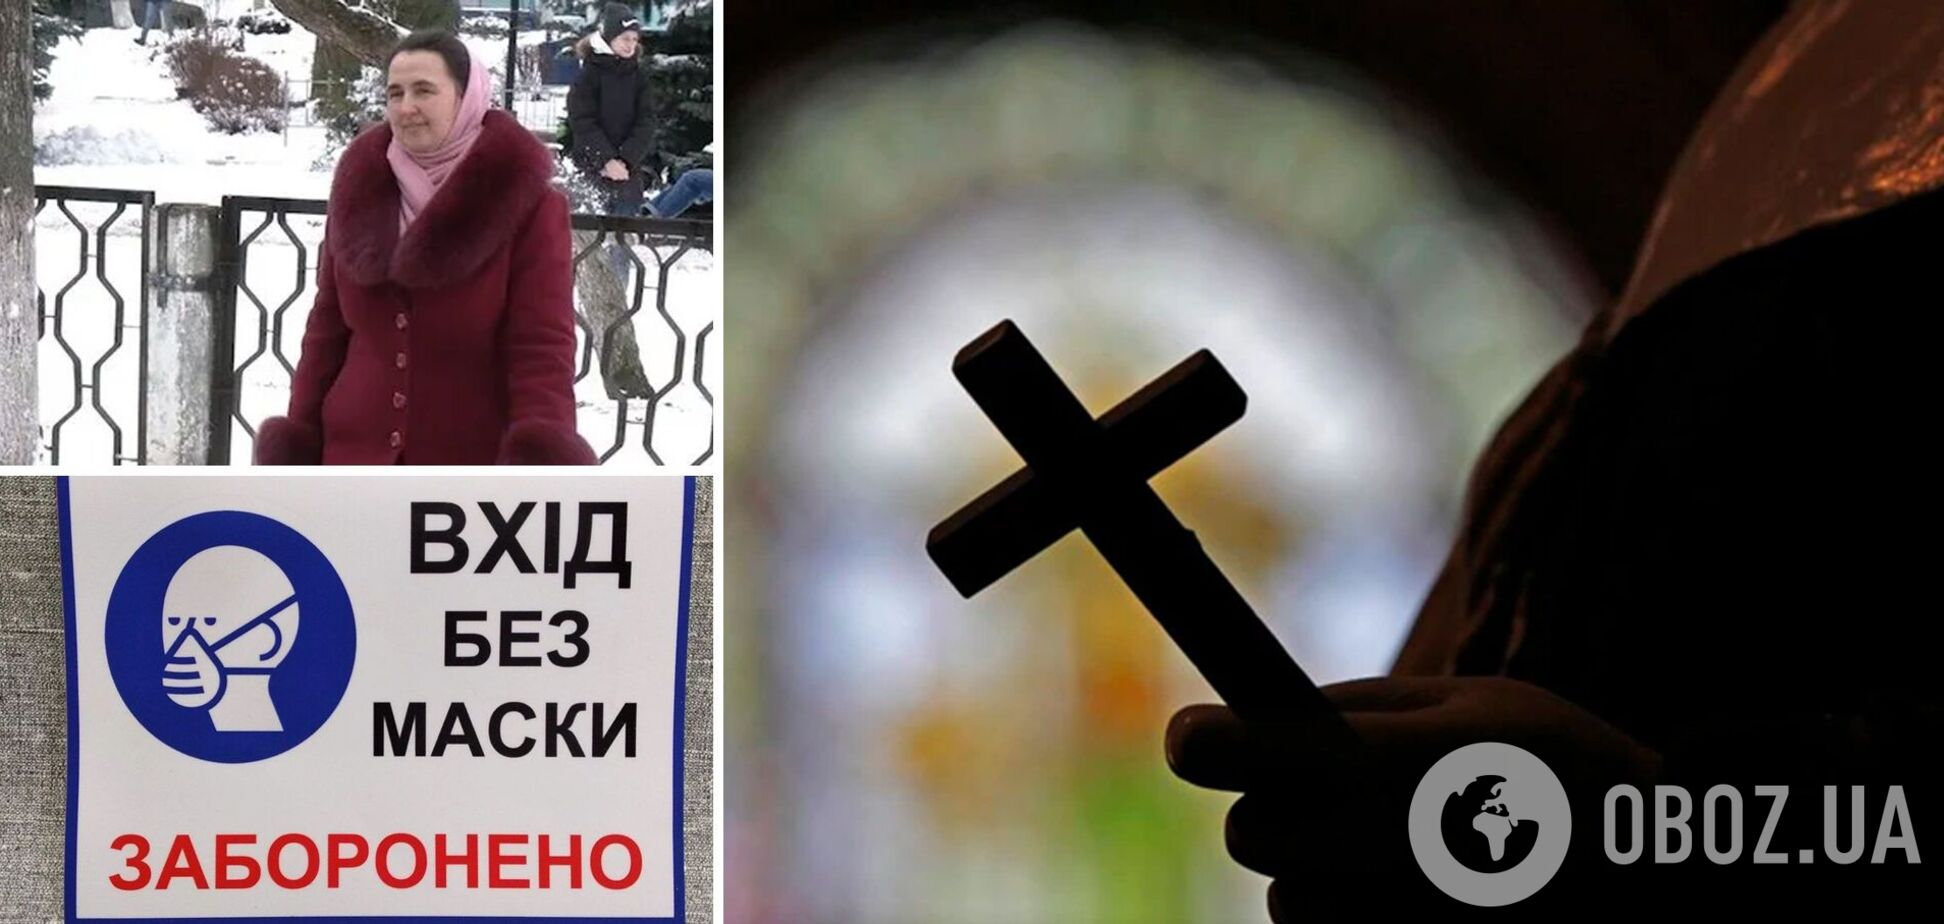 'Ми всі ходимо без масок!' На Рівненщині вчителька потрапила в скандал через релігійні переконання